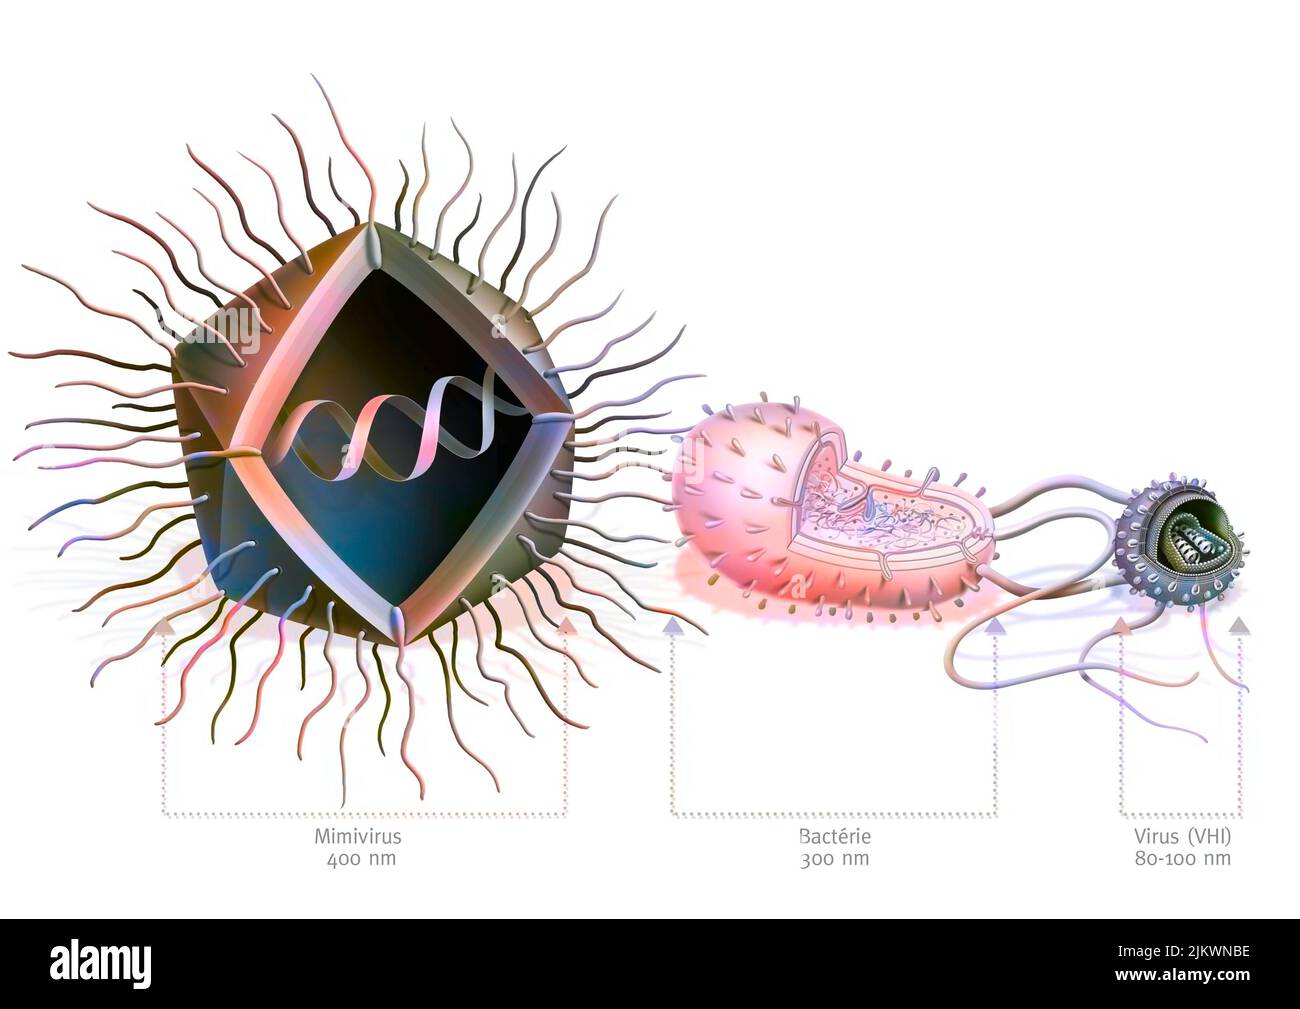 Comparaison de la taille du Mimivirus avec les bactéries et le virus. Banque D'Images